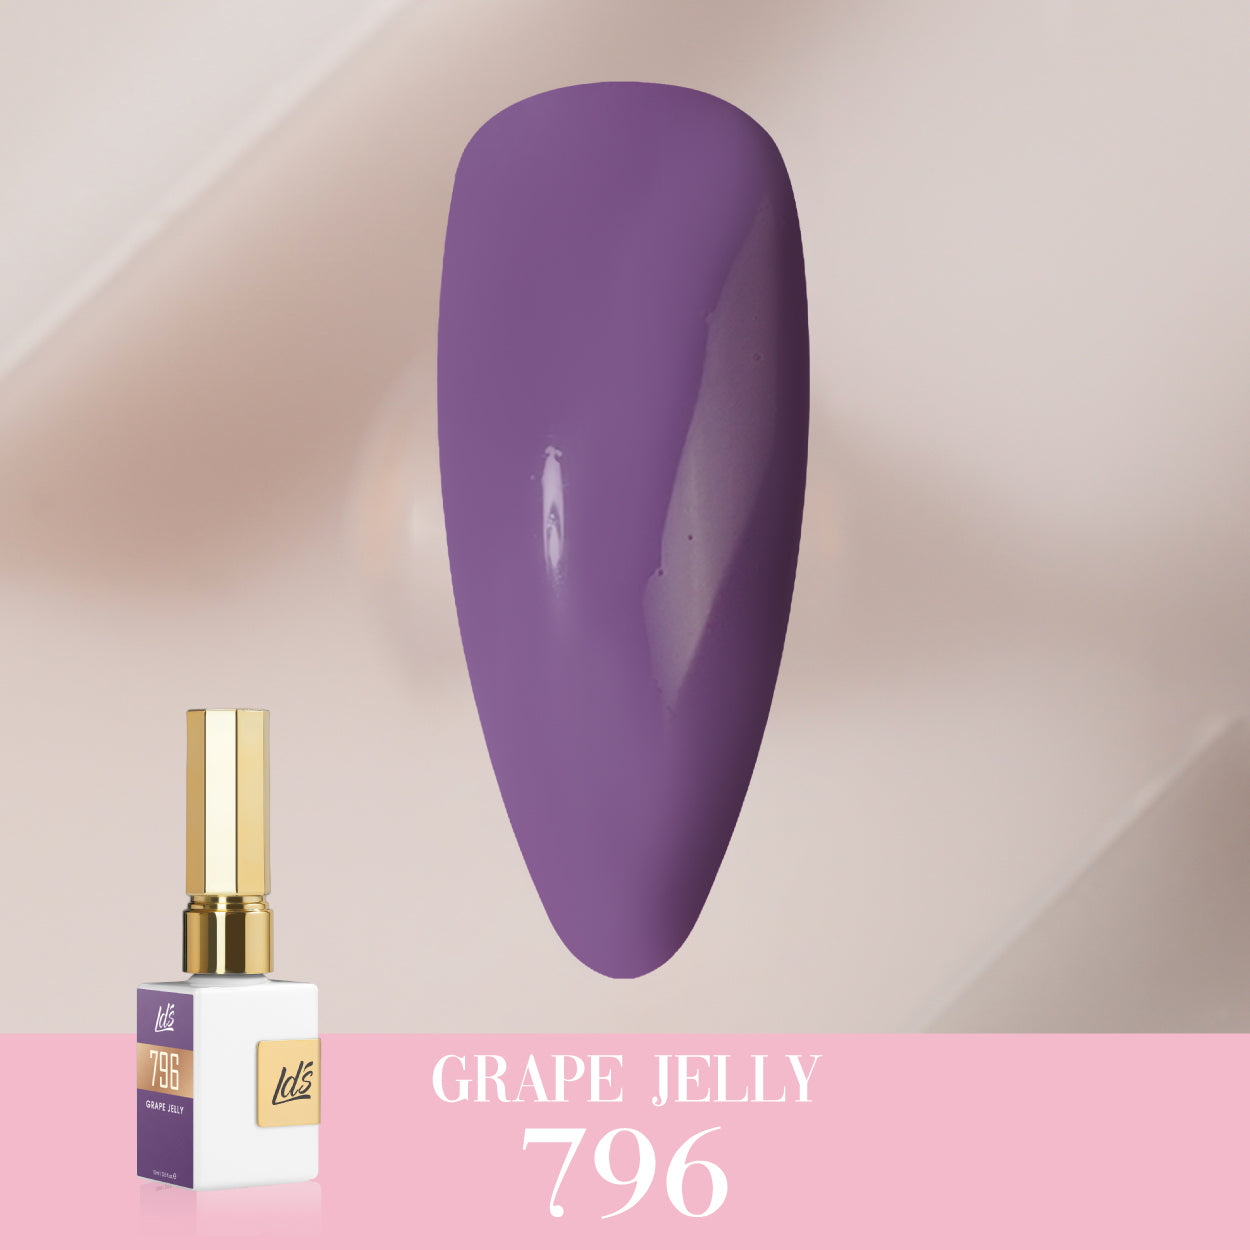 LDS Color Craze Collection - 796 Grape Jelly - Gel Polish 0.5oz